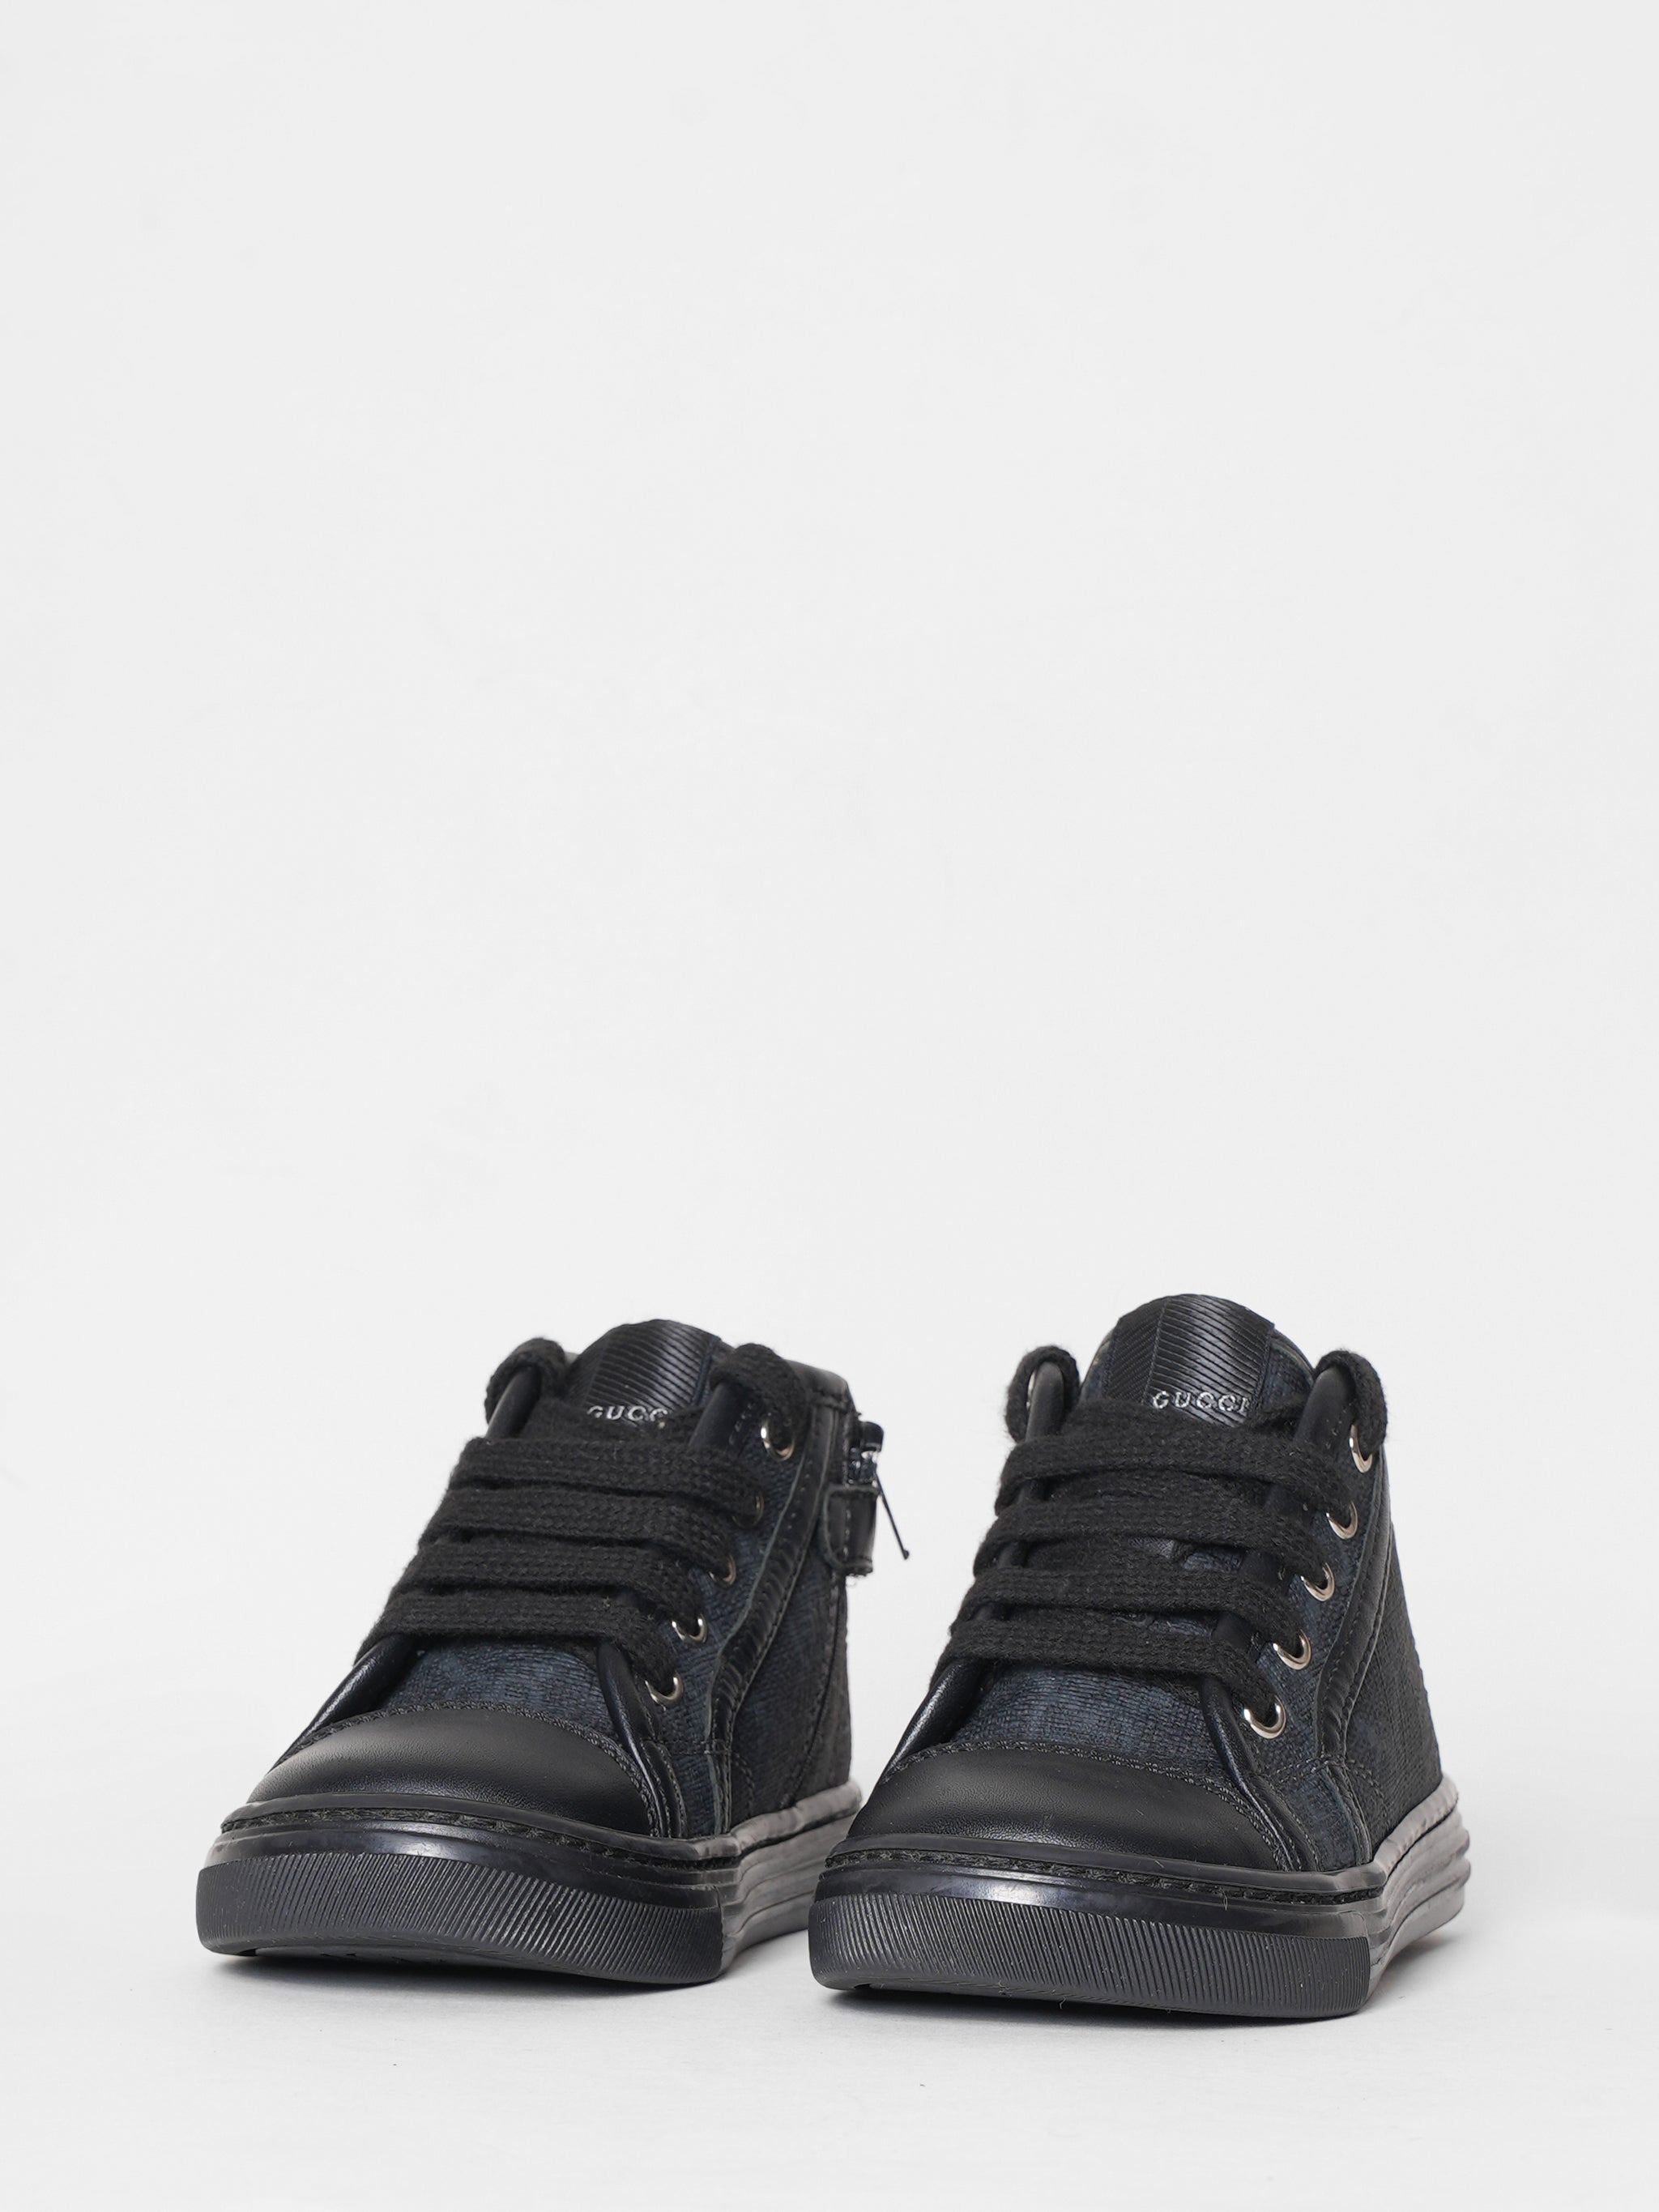 Gucci Black Shoes